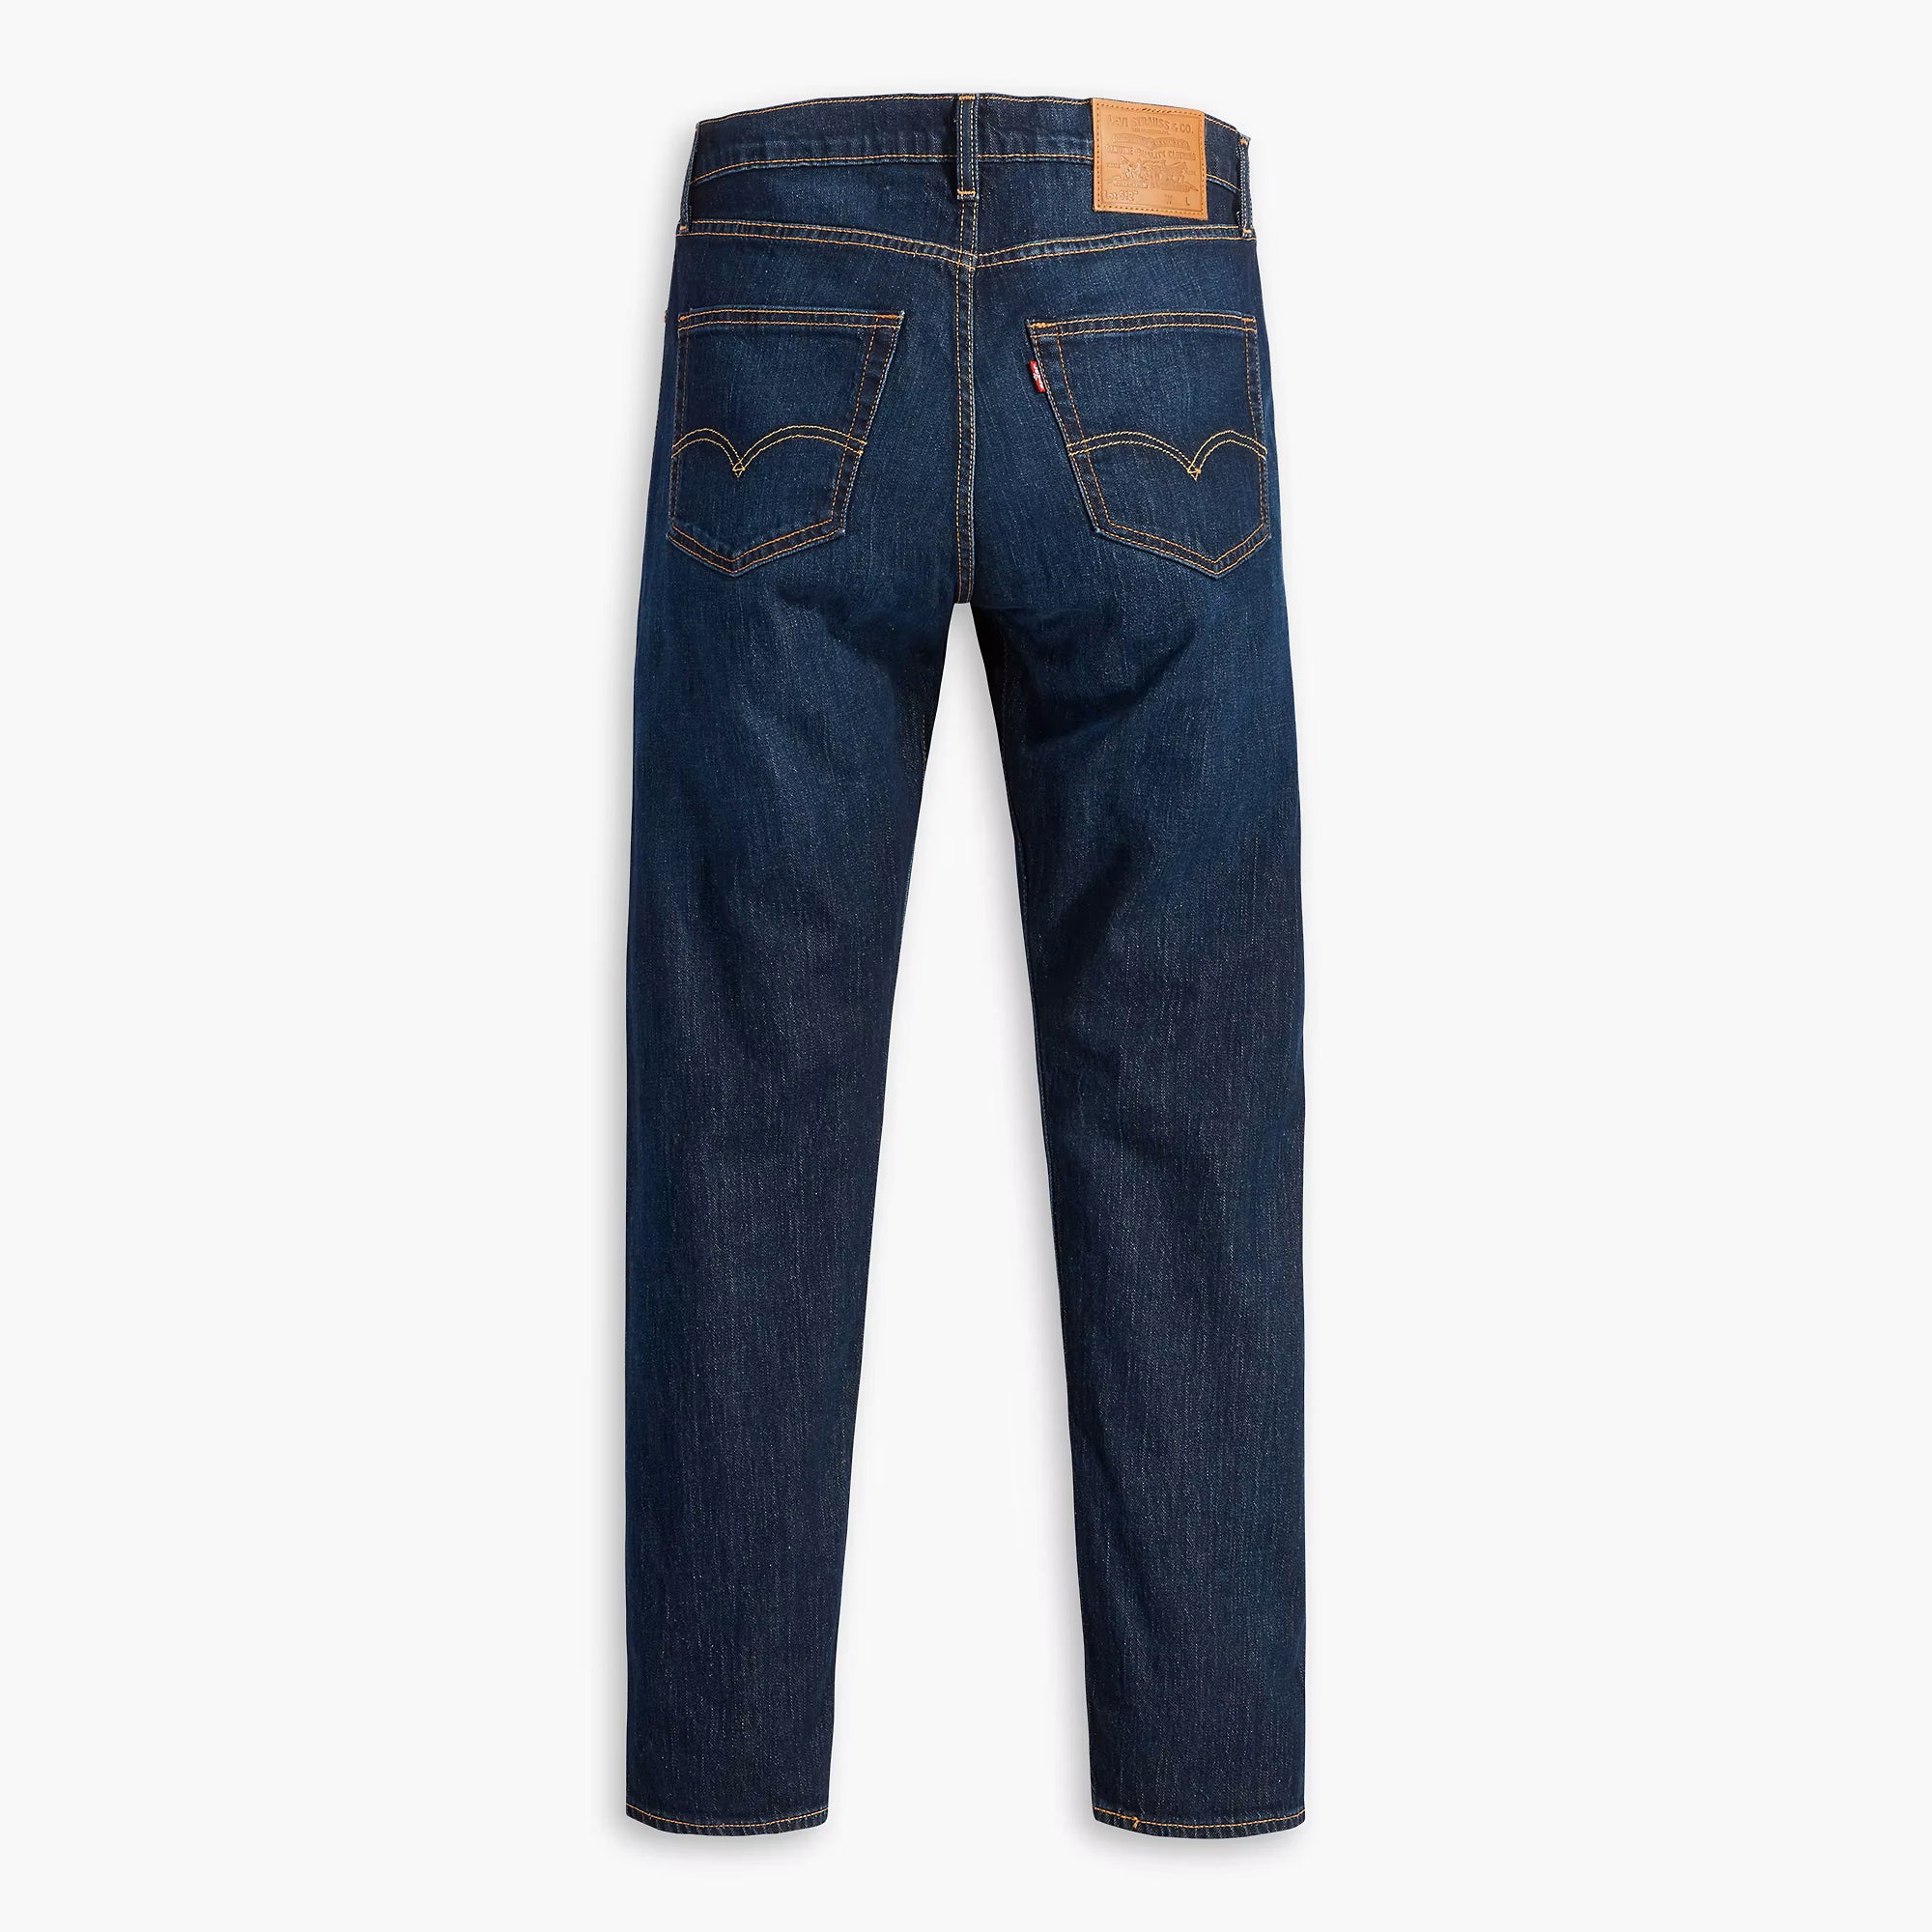 512 Slim Taper Jeans - Keepin It Clean